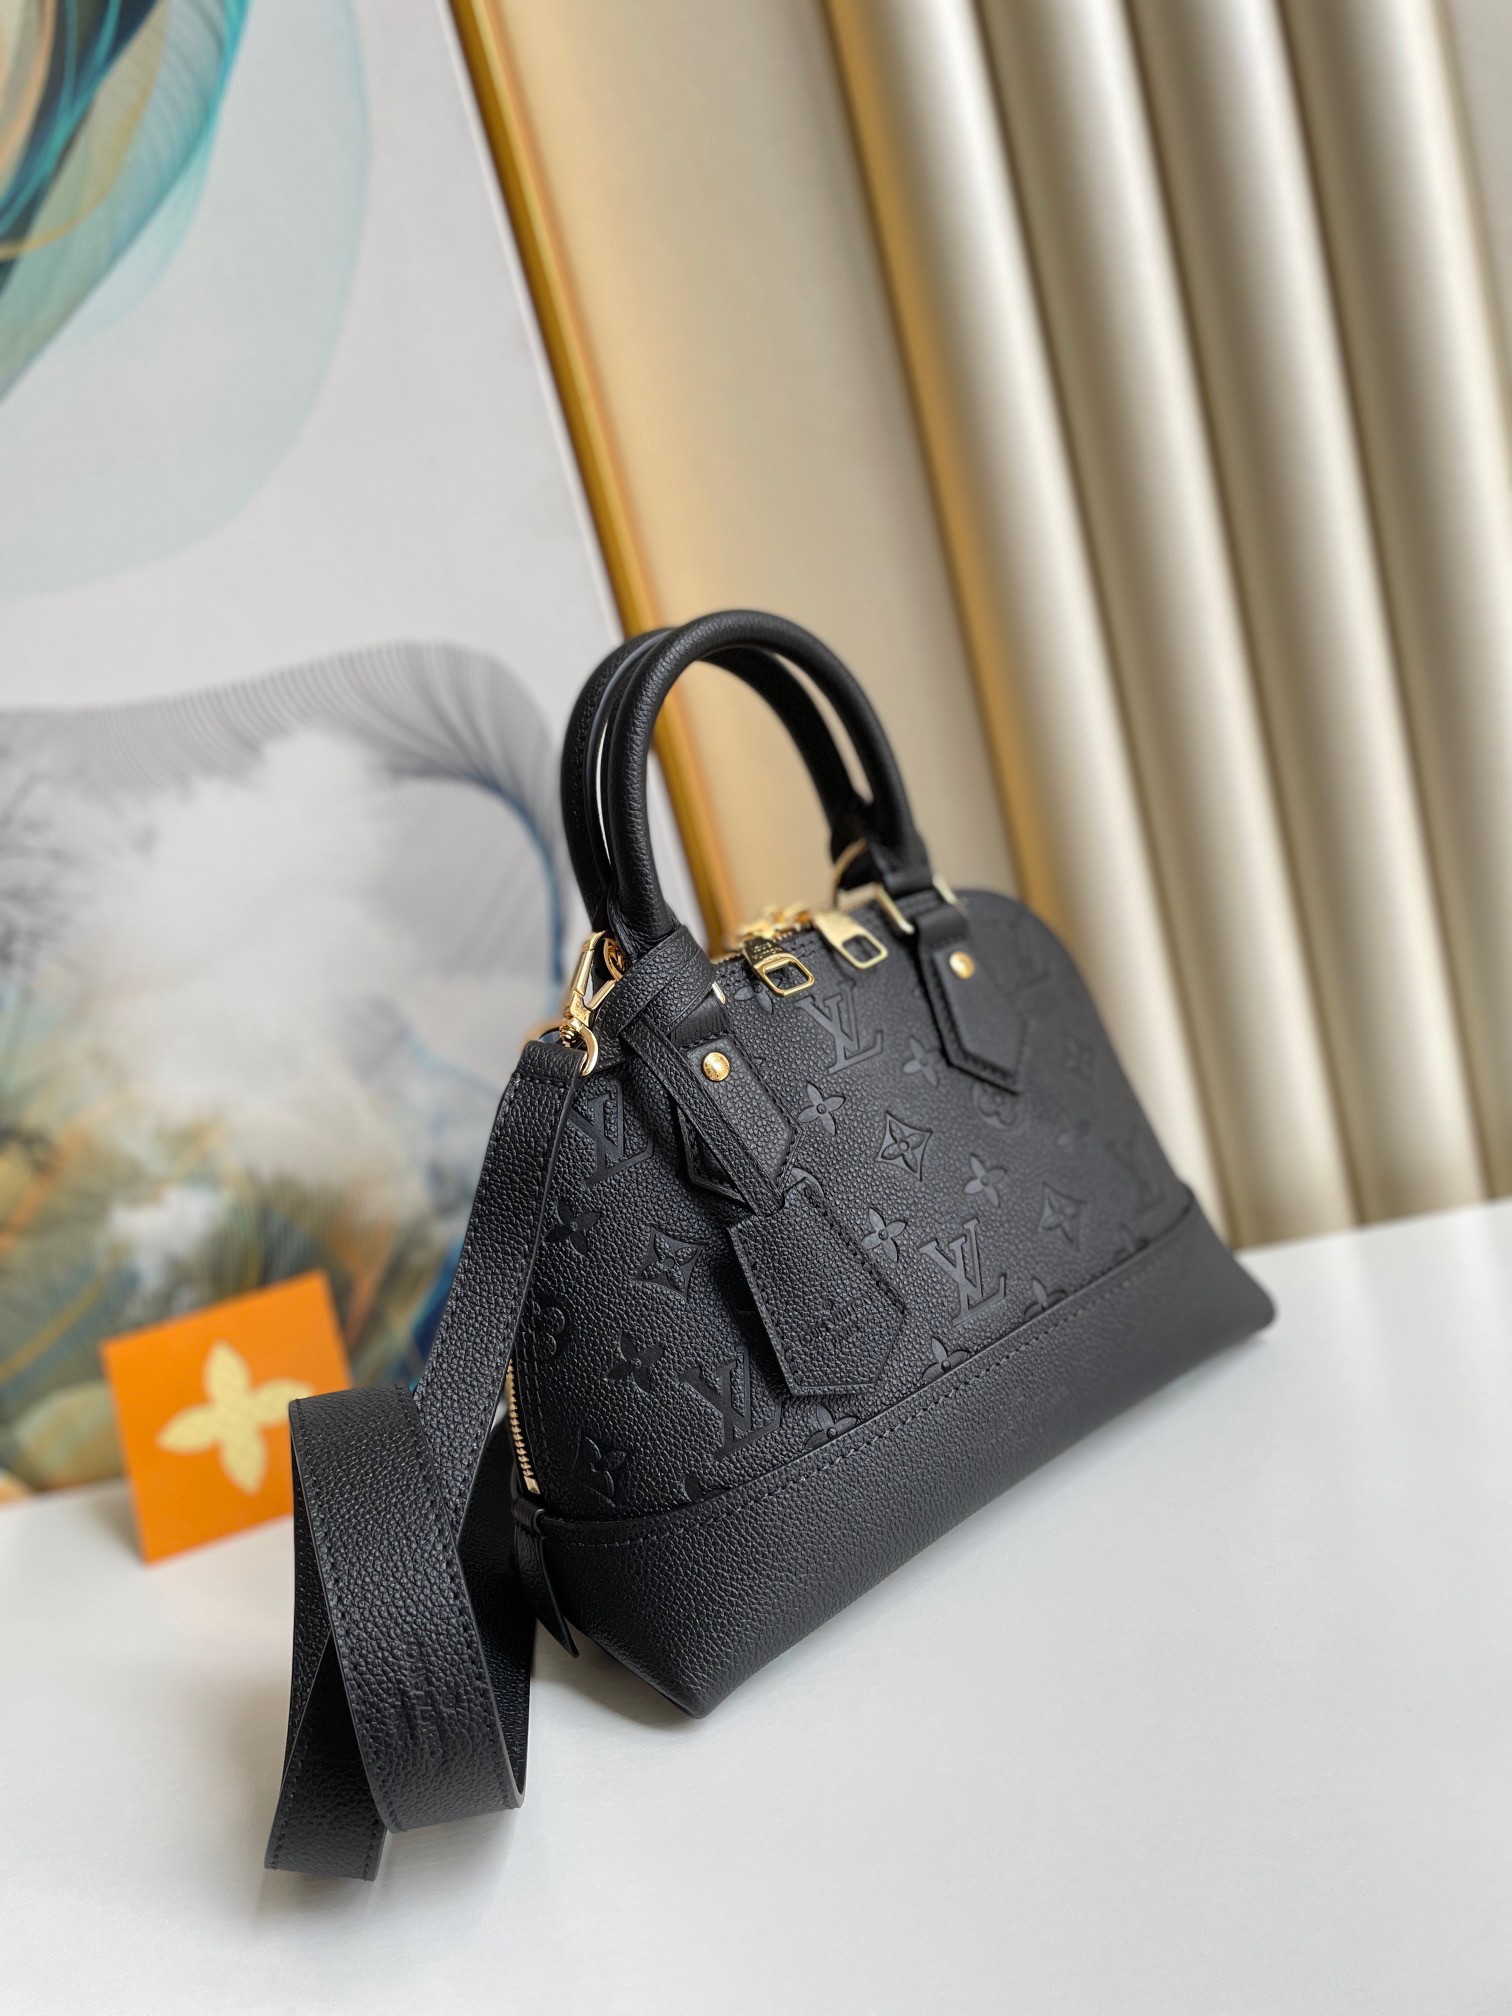 Replica Louis Vuitton Neo Alma BB Bag In Monogram Empreinte